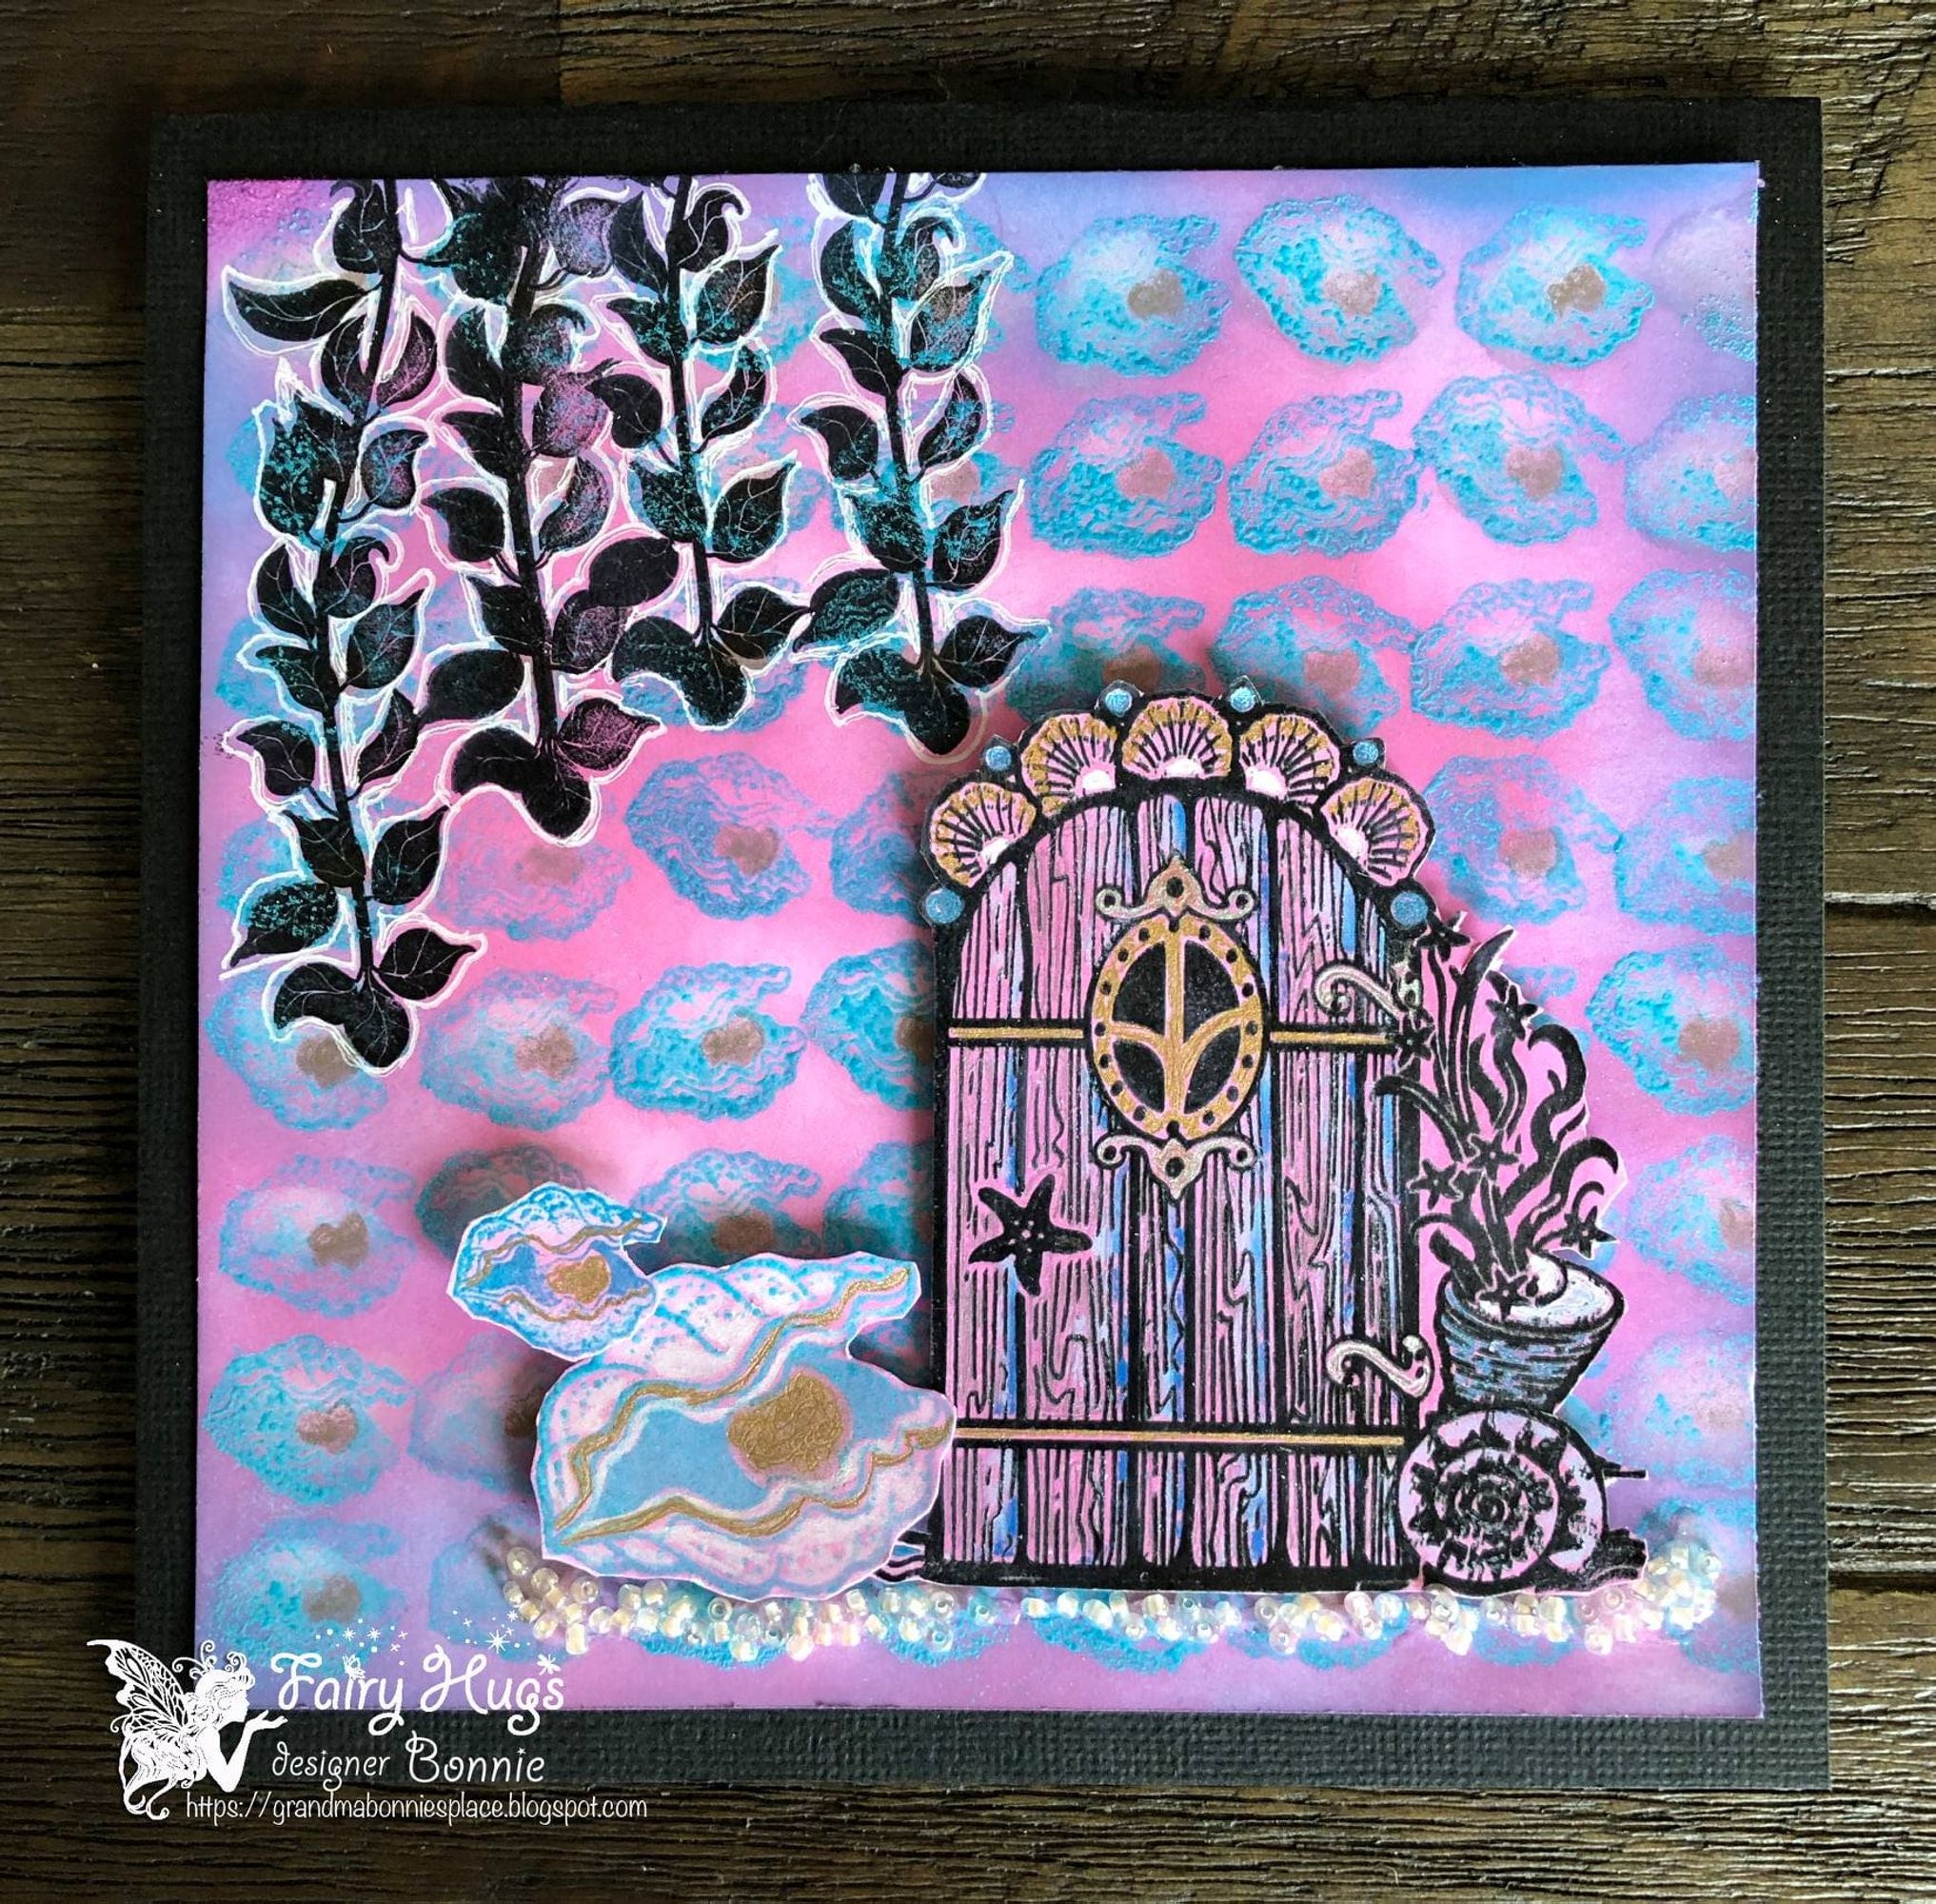 Fairy Hugs Stamps - Ivy Seaweed